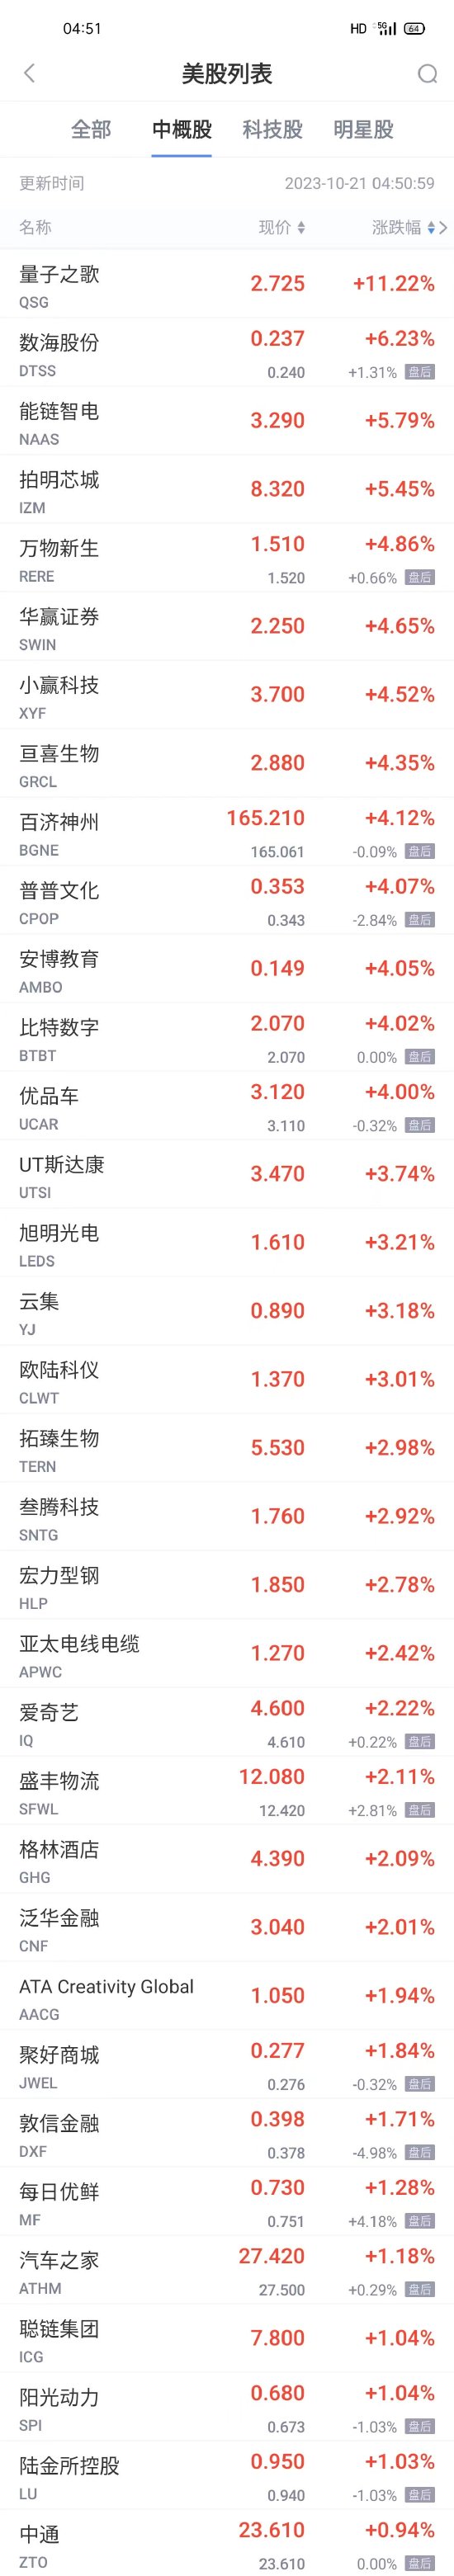 周五热门中概股普跌 阿里京东网易跌超2% 蔚小理跌超1%